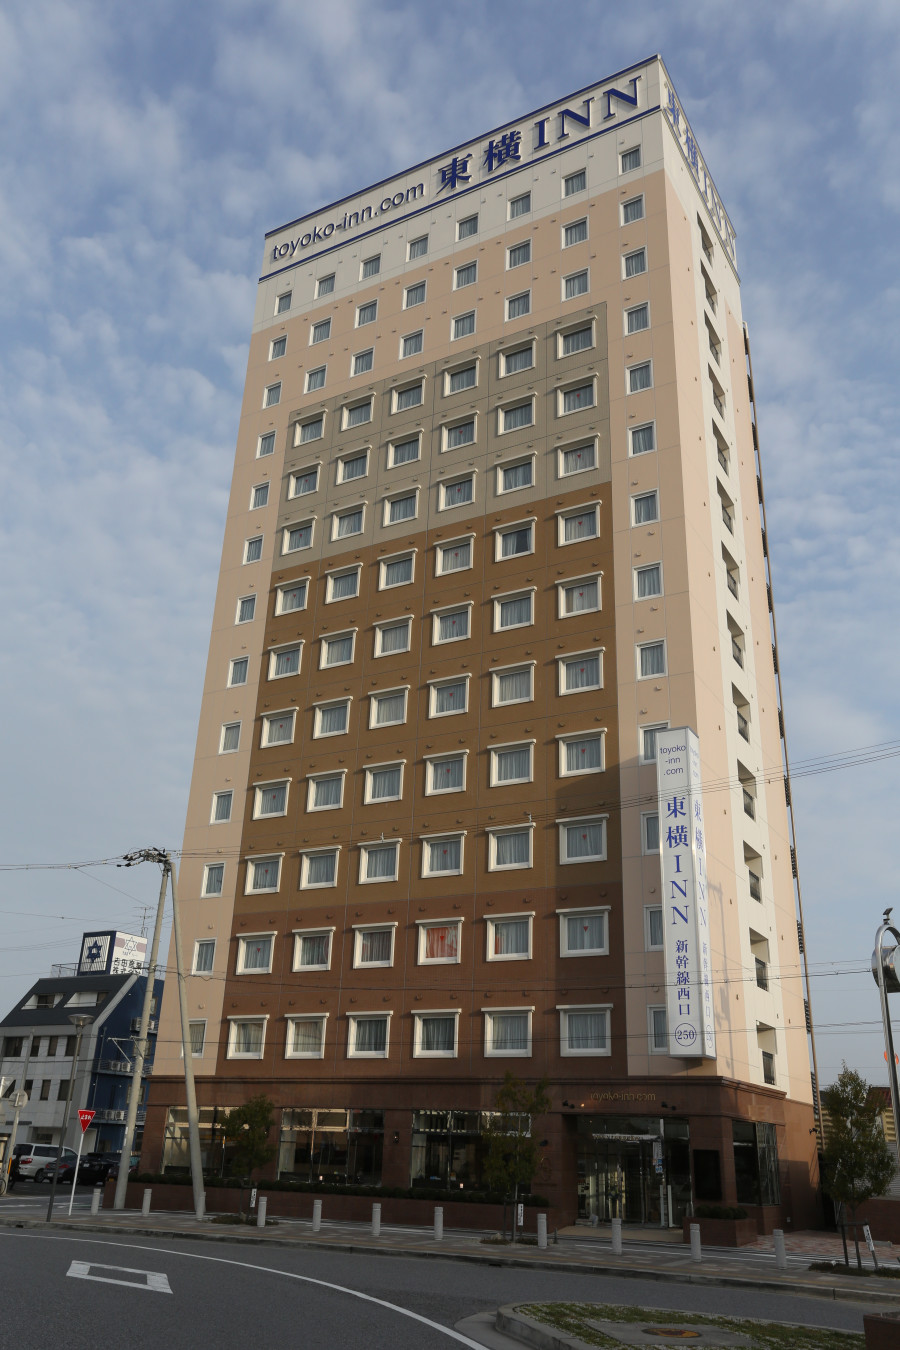 公式 ホテル東横inn米原駅新幹線西口 滋賀県のホテル 東横イン ホテル ビジネスホテル予約